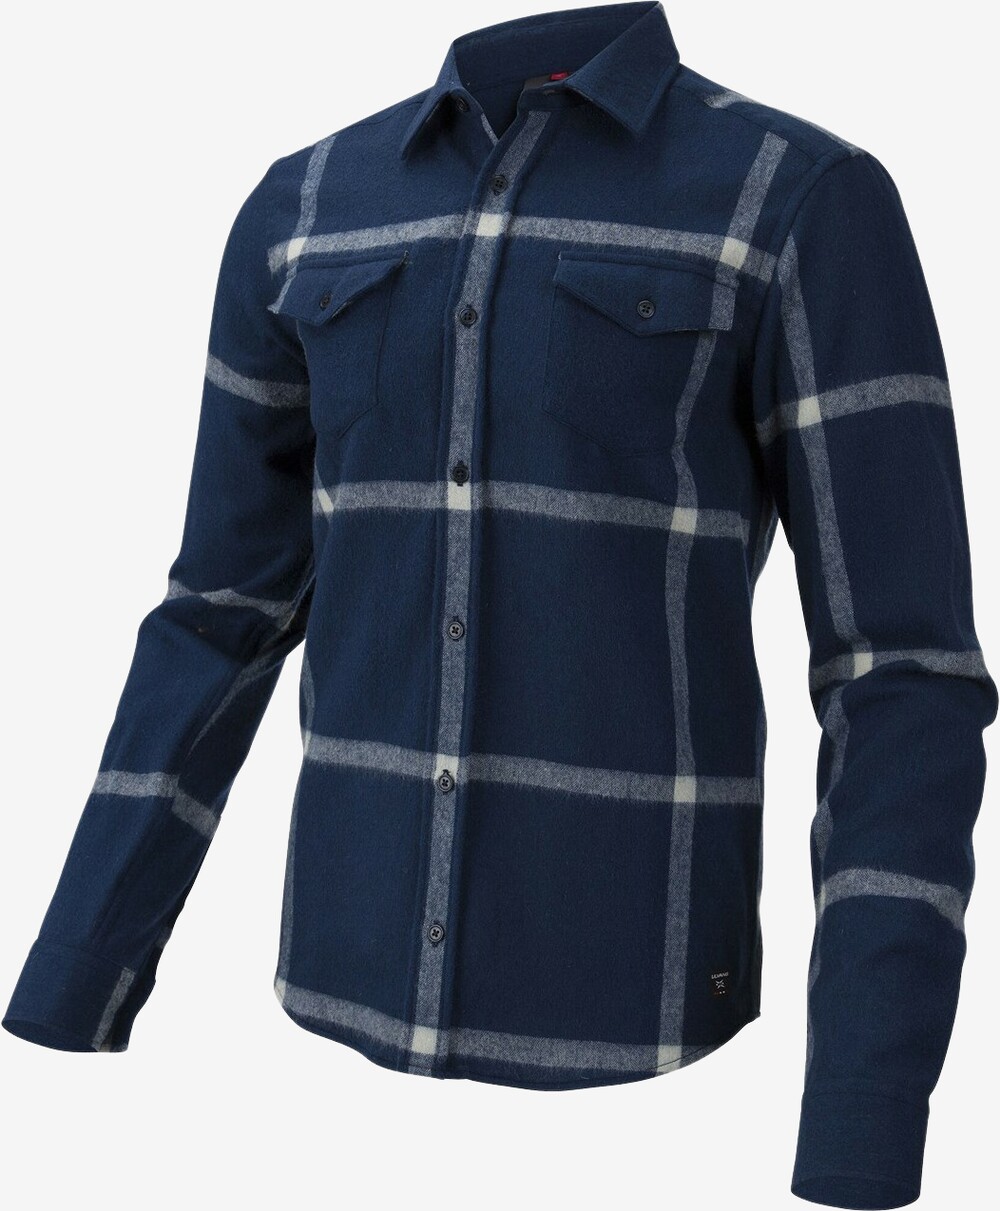 Se Ulvang - Yddin uldskjorte (Blå) - M hos Friluft.dk